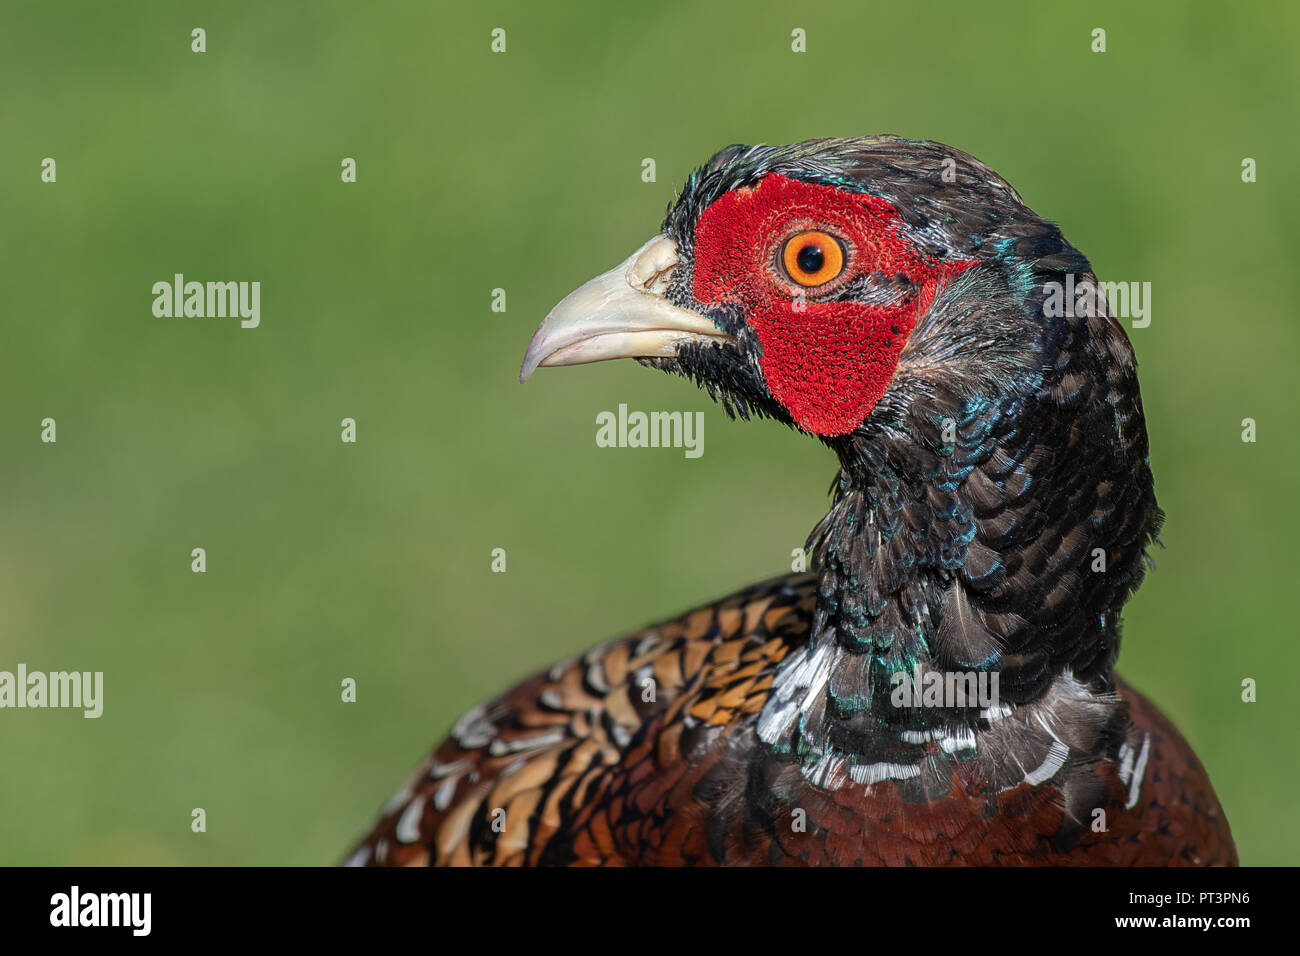 Un molto vicino la fotografia della testa di un fagiano maschio. Si tratta di un profilo verticale e l'uccello è rivolto a sinistra in spazio aperto Foto Stock